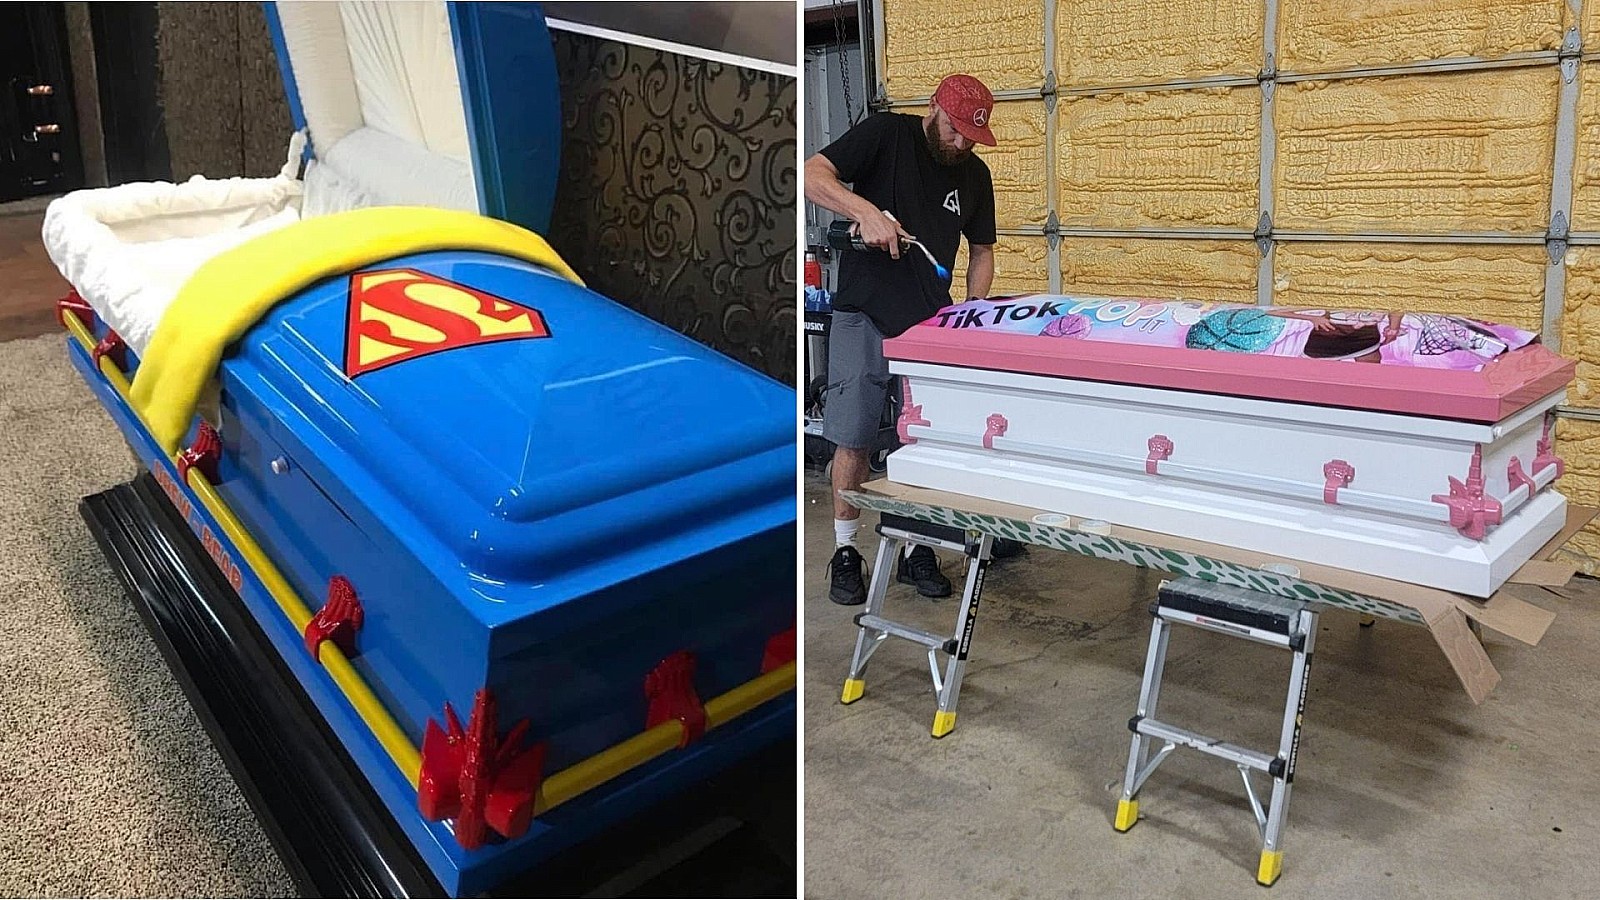 "Al estilo de TikTok, Superman": Artista regala ataúdes personalizados a víctimas de Texas